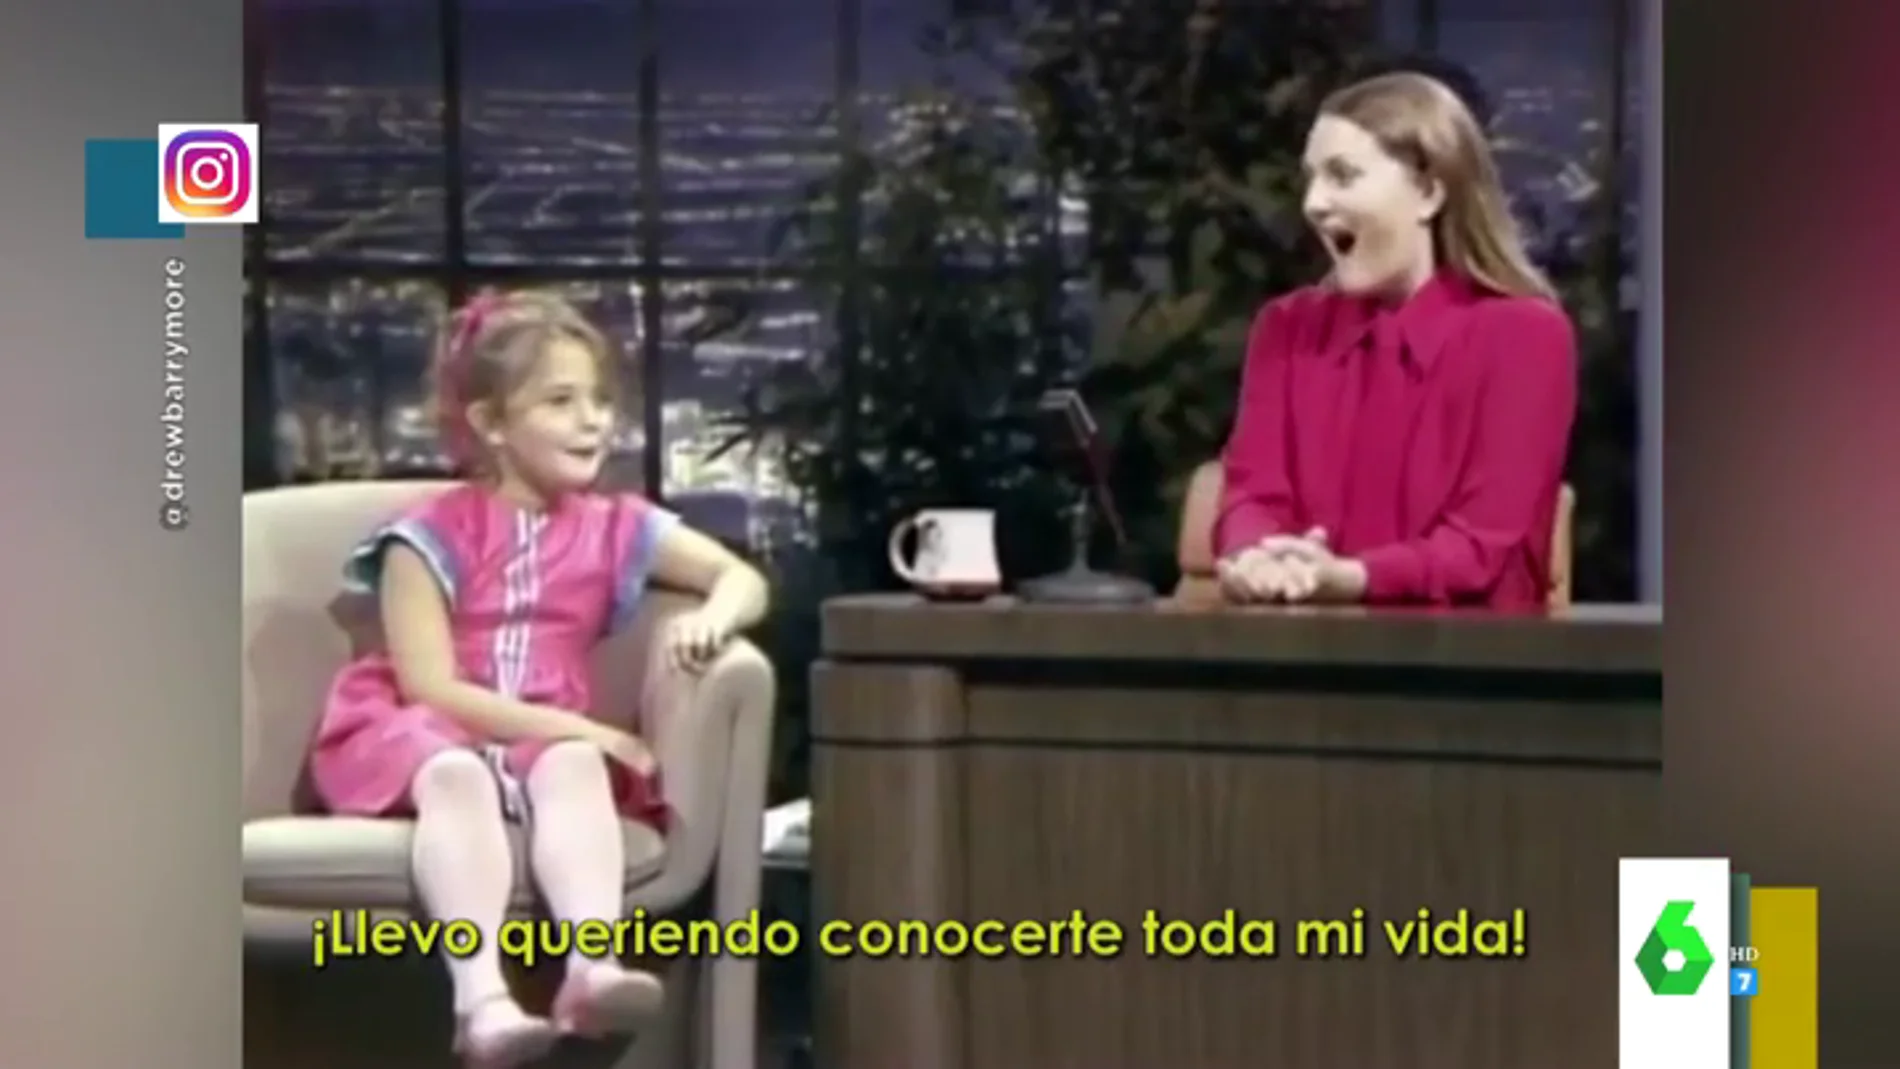 La divertida entrevista de Drew Barrymore a sí misma con siete años: "¡Llevo toda la vida queriendo conocerte!"